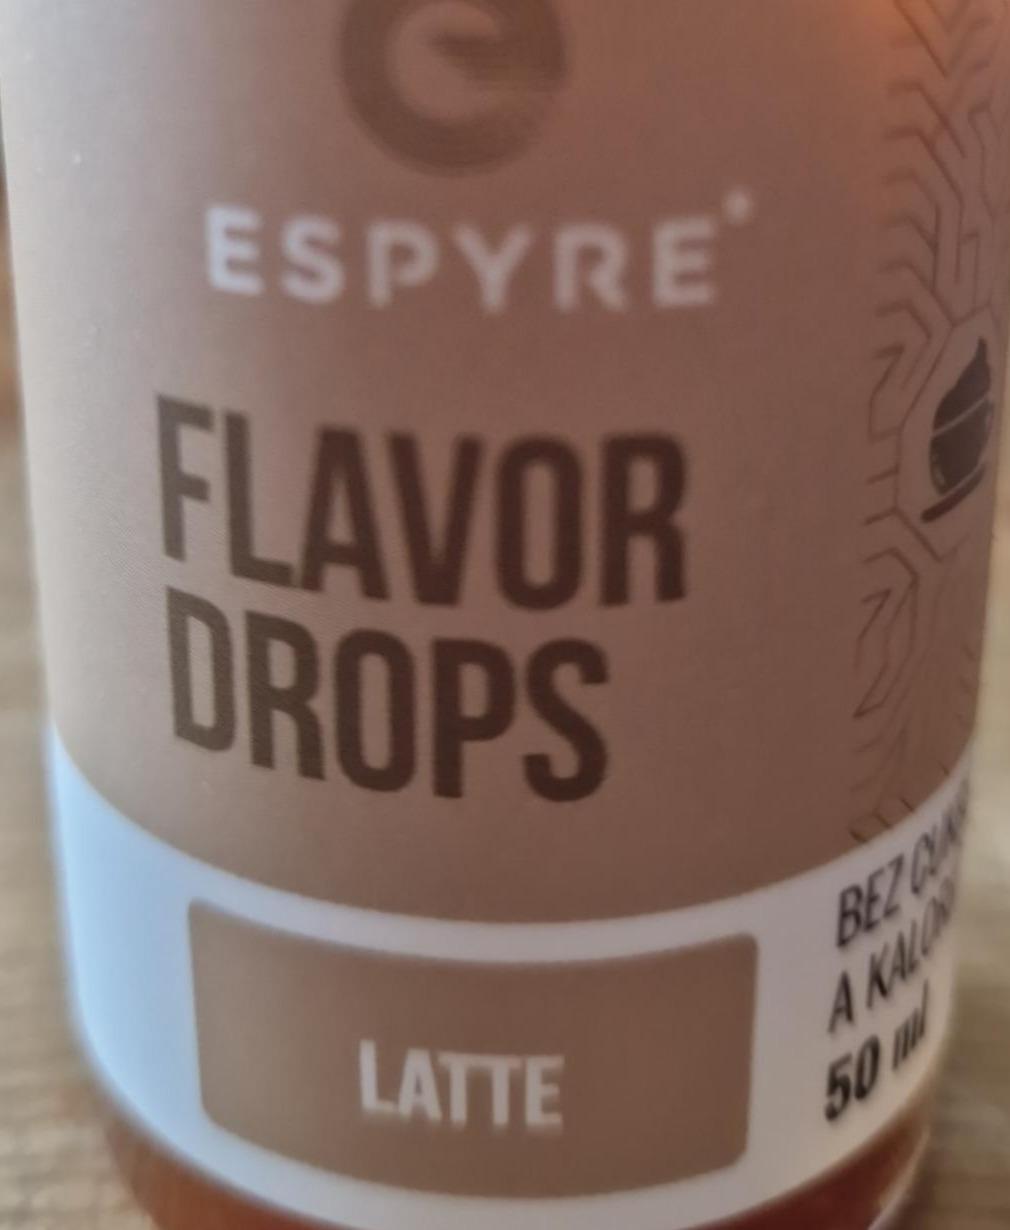 Fotografie - Flavor drops Latte Espyre